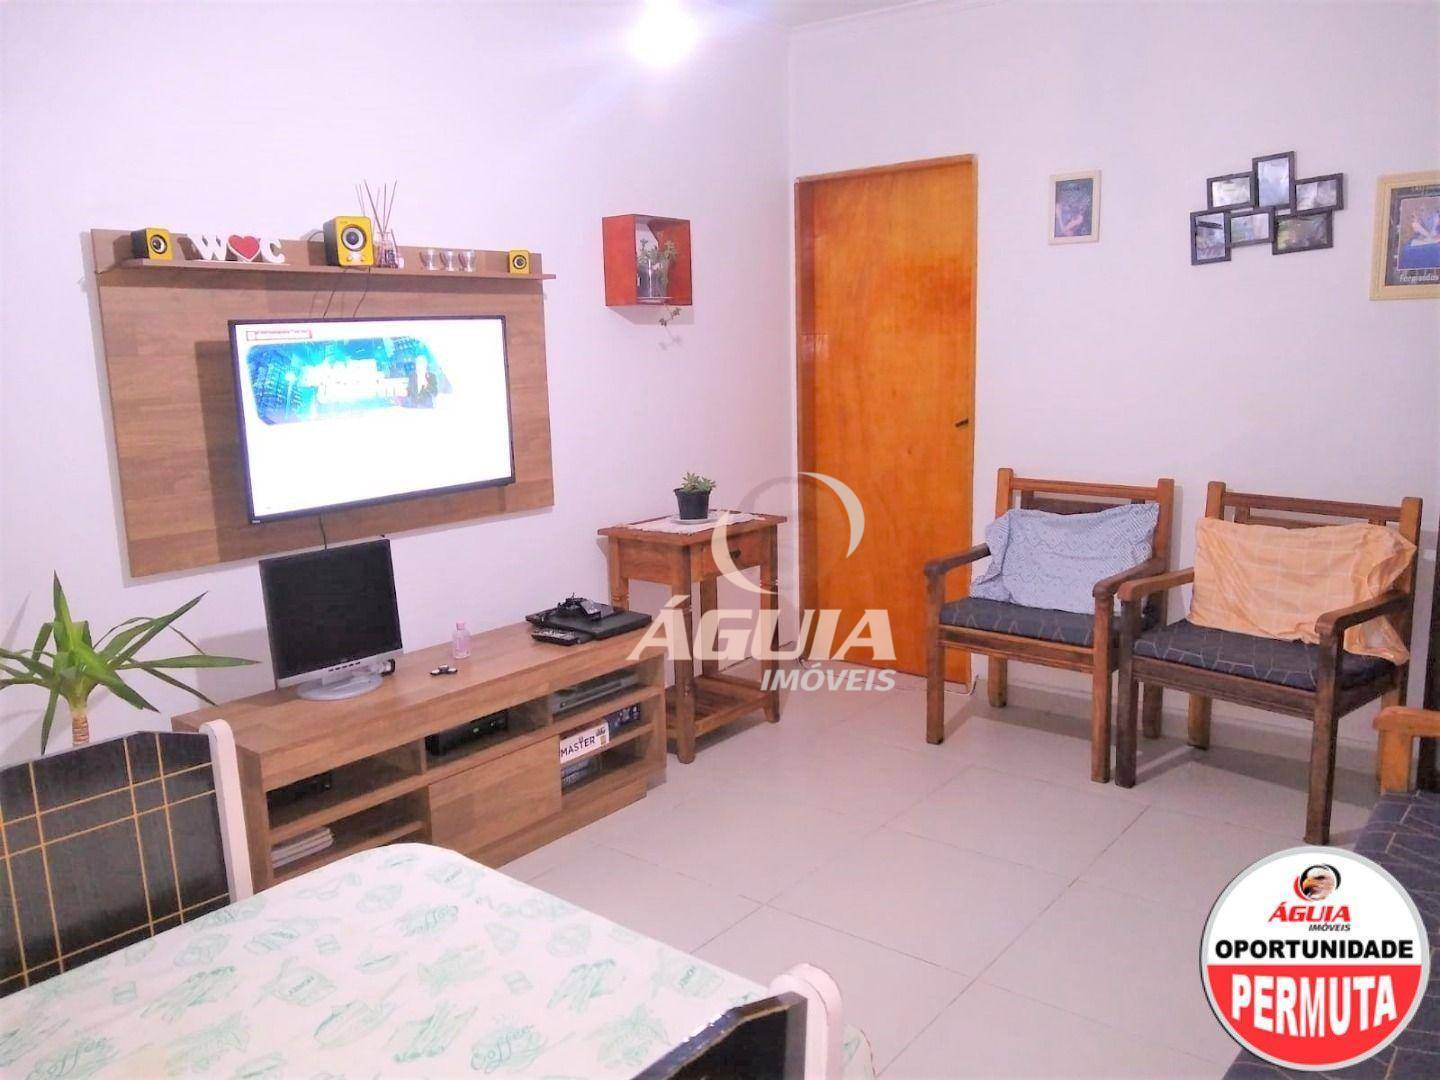 Casa com 02 dormitórios sendo 01 suíte à venda, 69 m² por R$ 320.000 - Jardim do Estádio - Santo André/SP